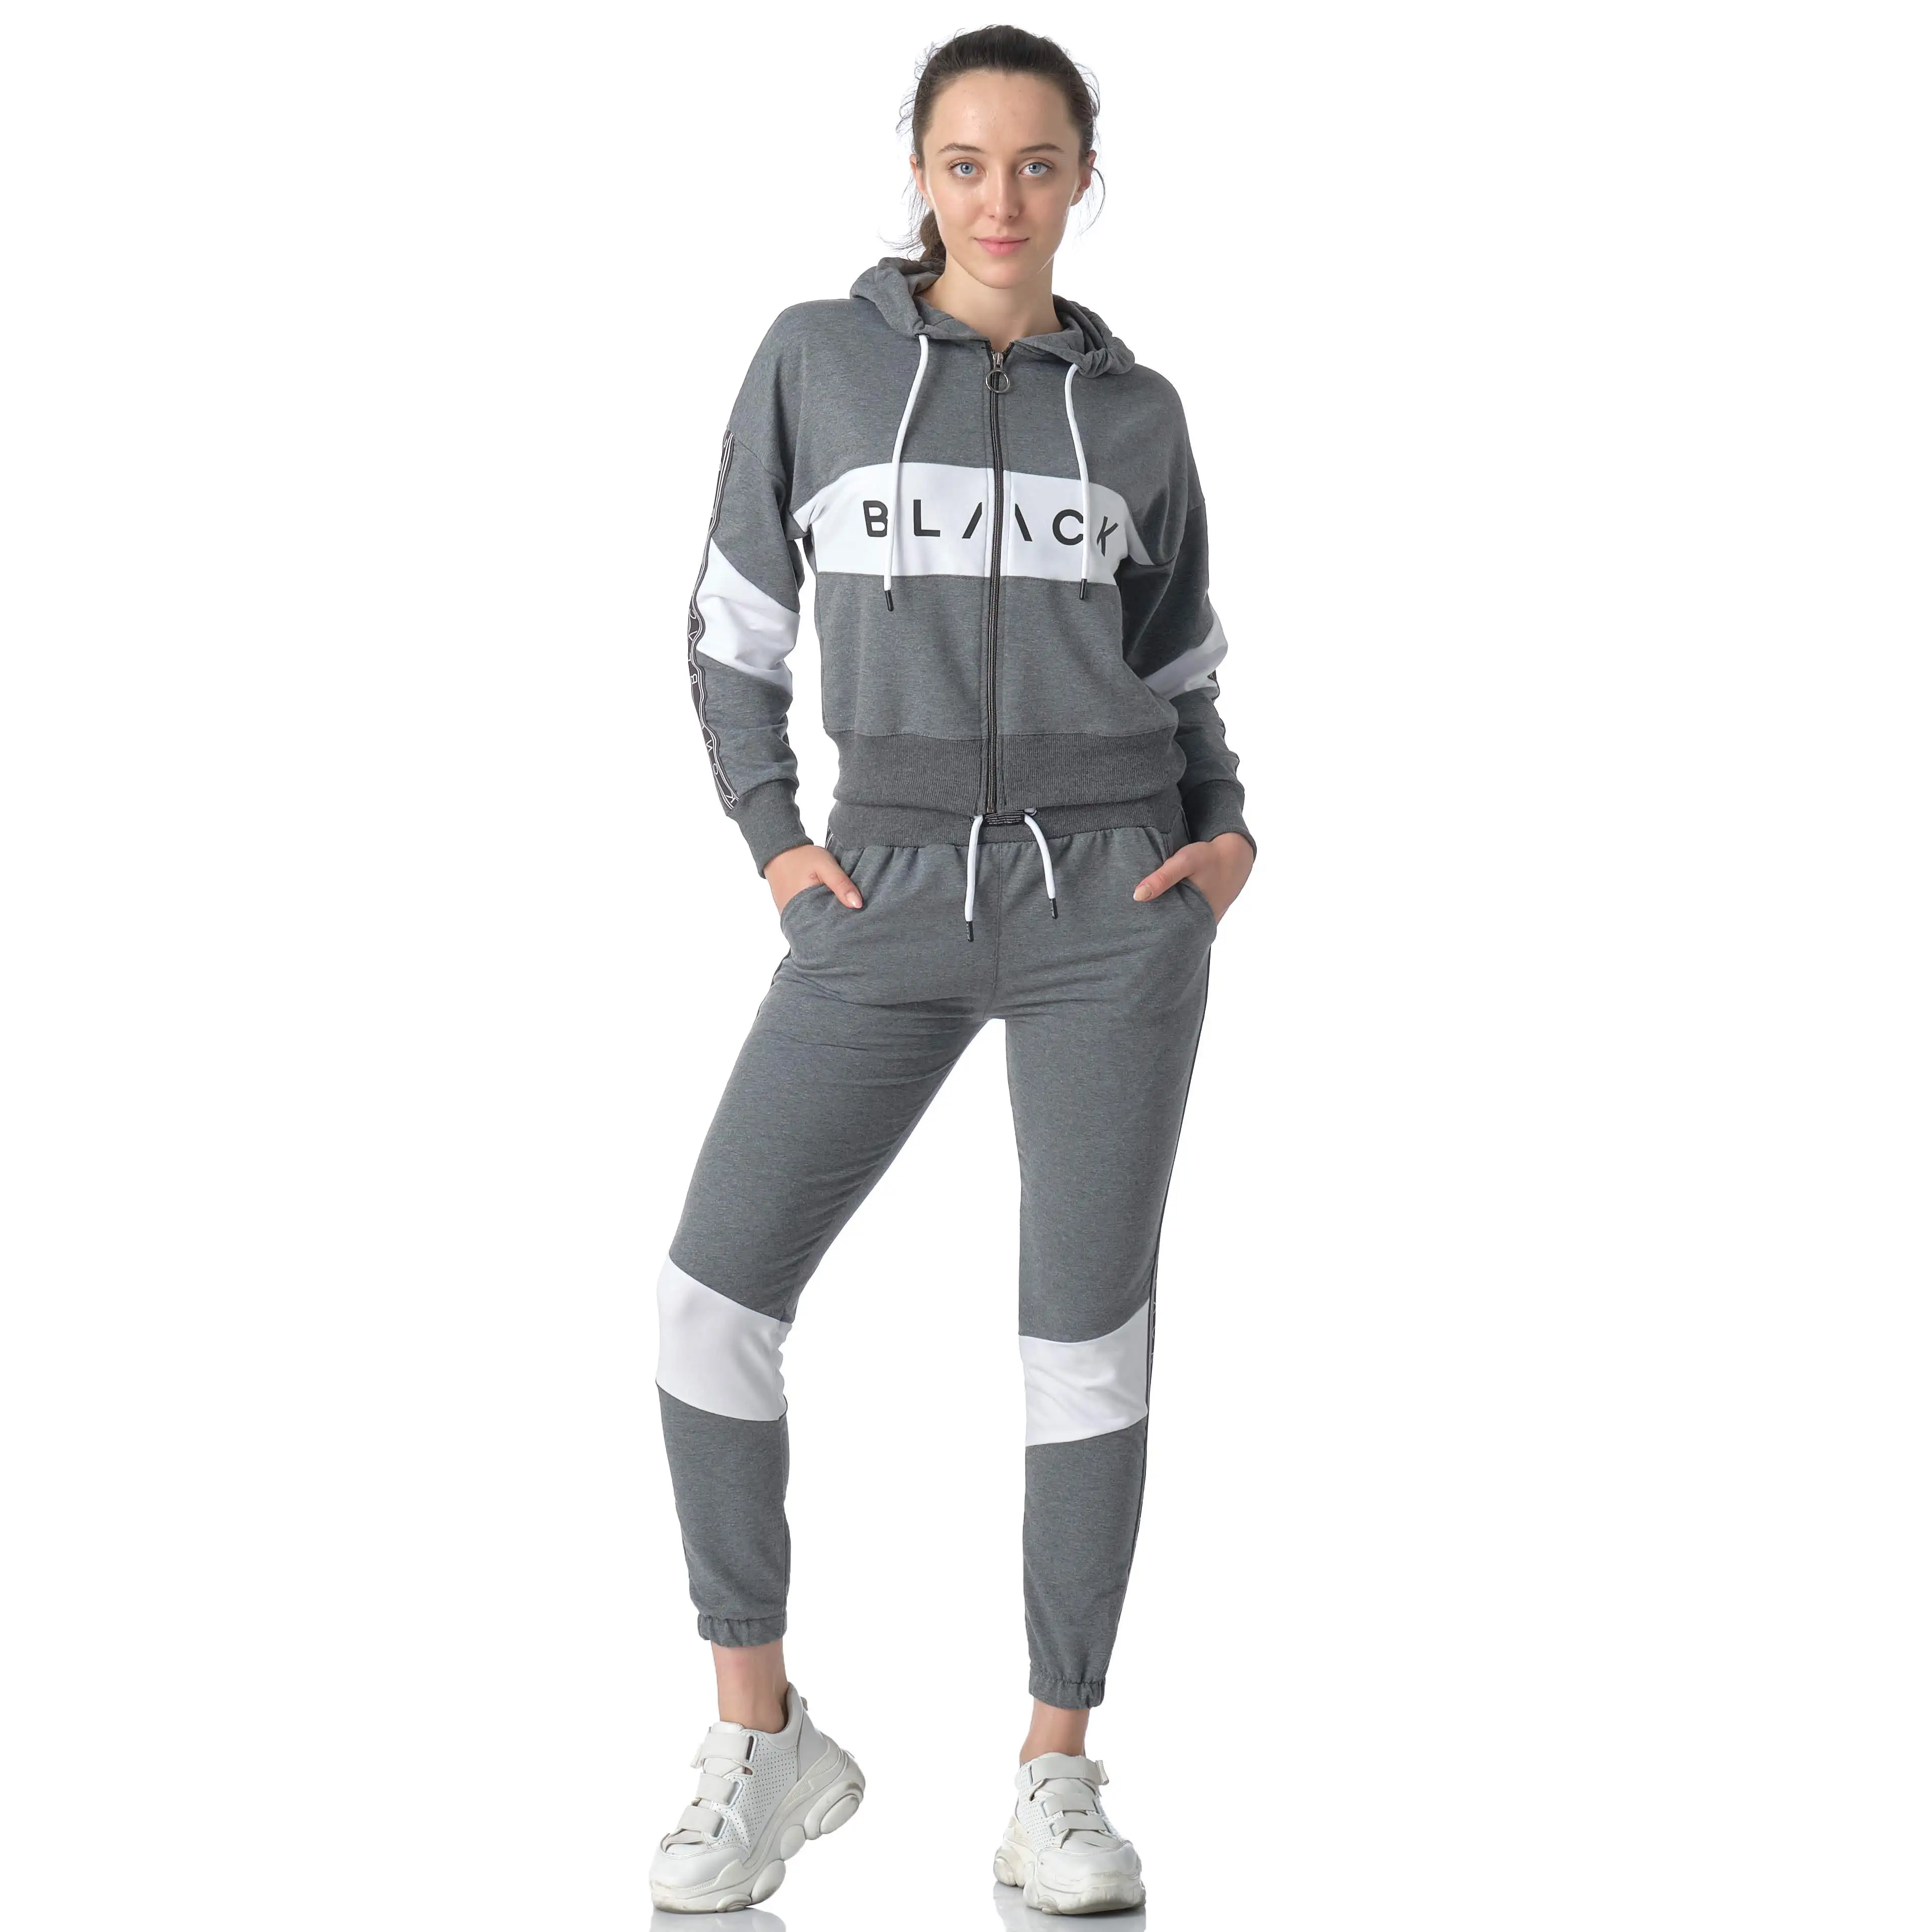 Original Anvendelig menneskelige ressourcer Womens Jogging Suits On Sale Online, SAVE 57% - motorhomevoyager.co.uk